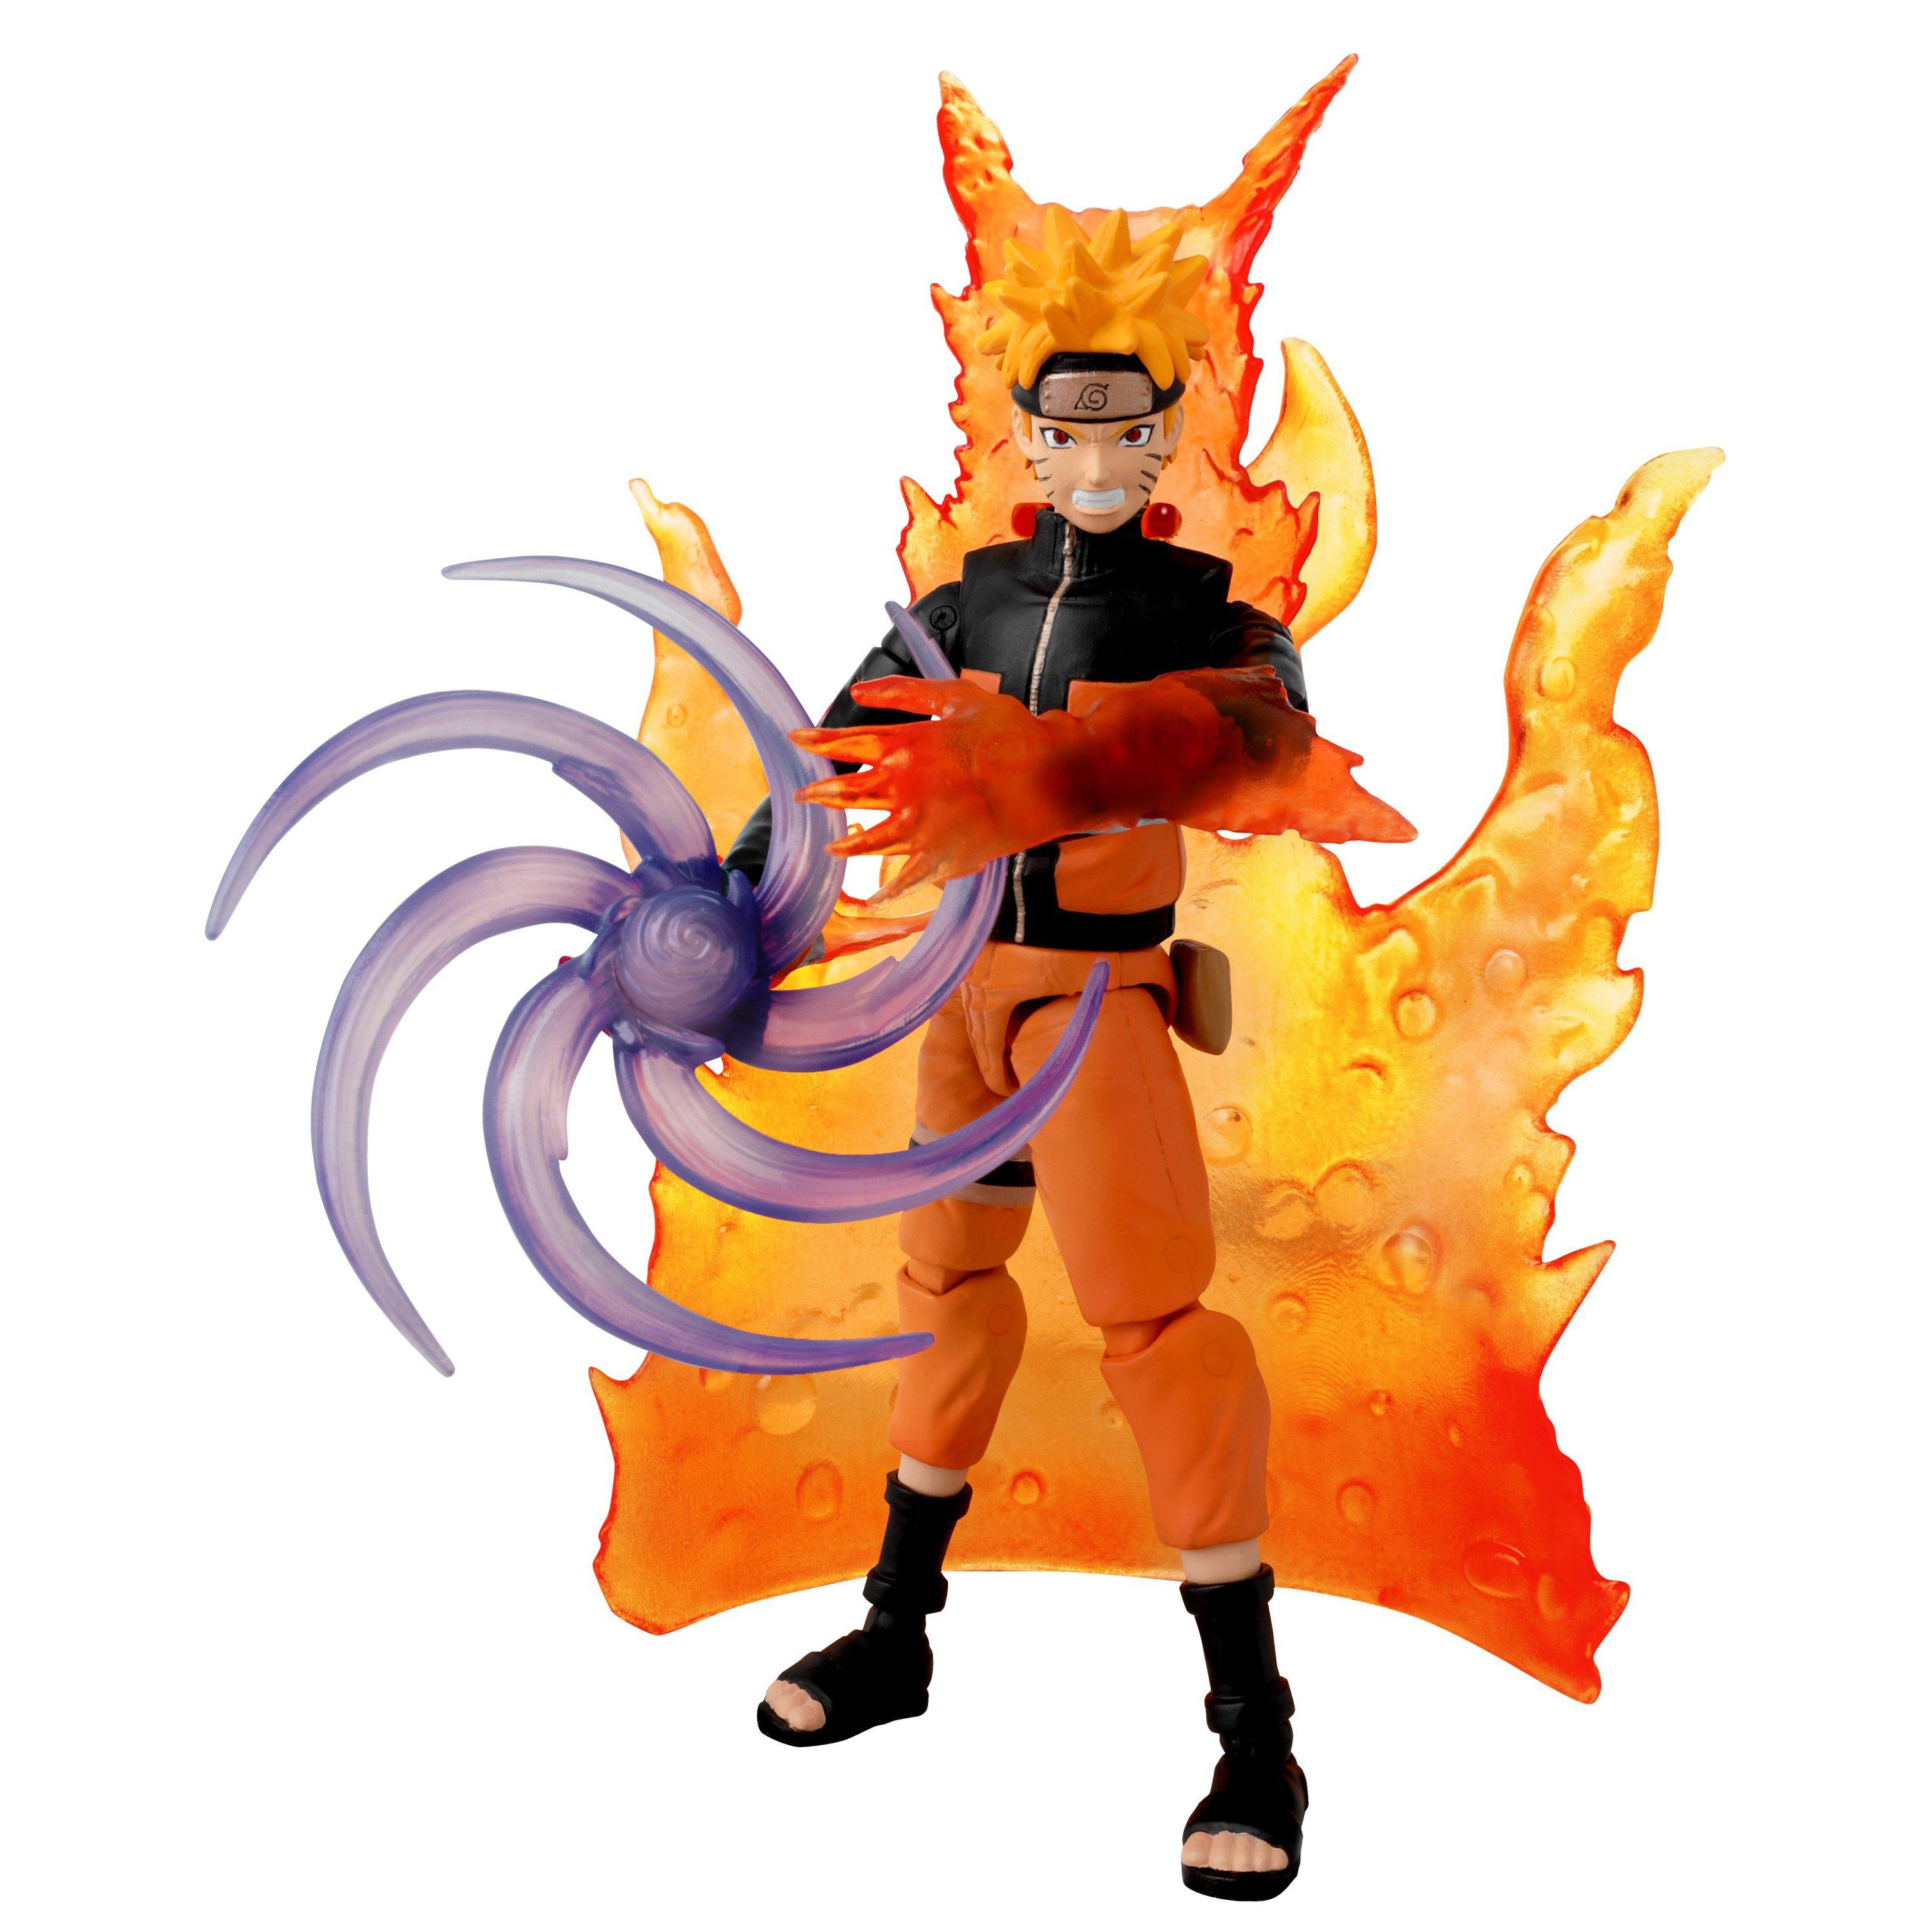 Bandai Anime Heroes Naruto 6.5 Action Figure Uzumaki  - Best Buy